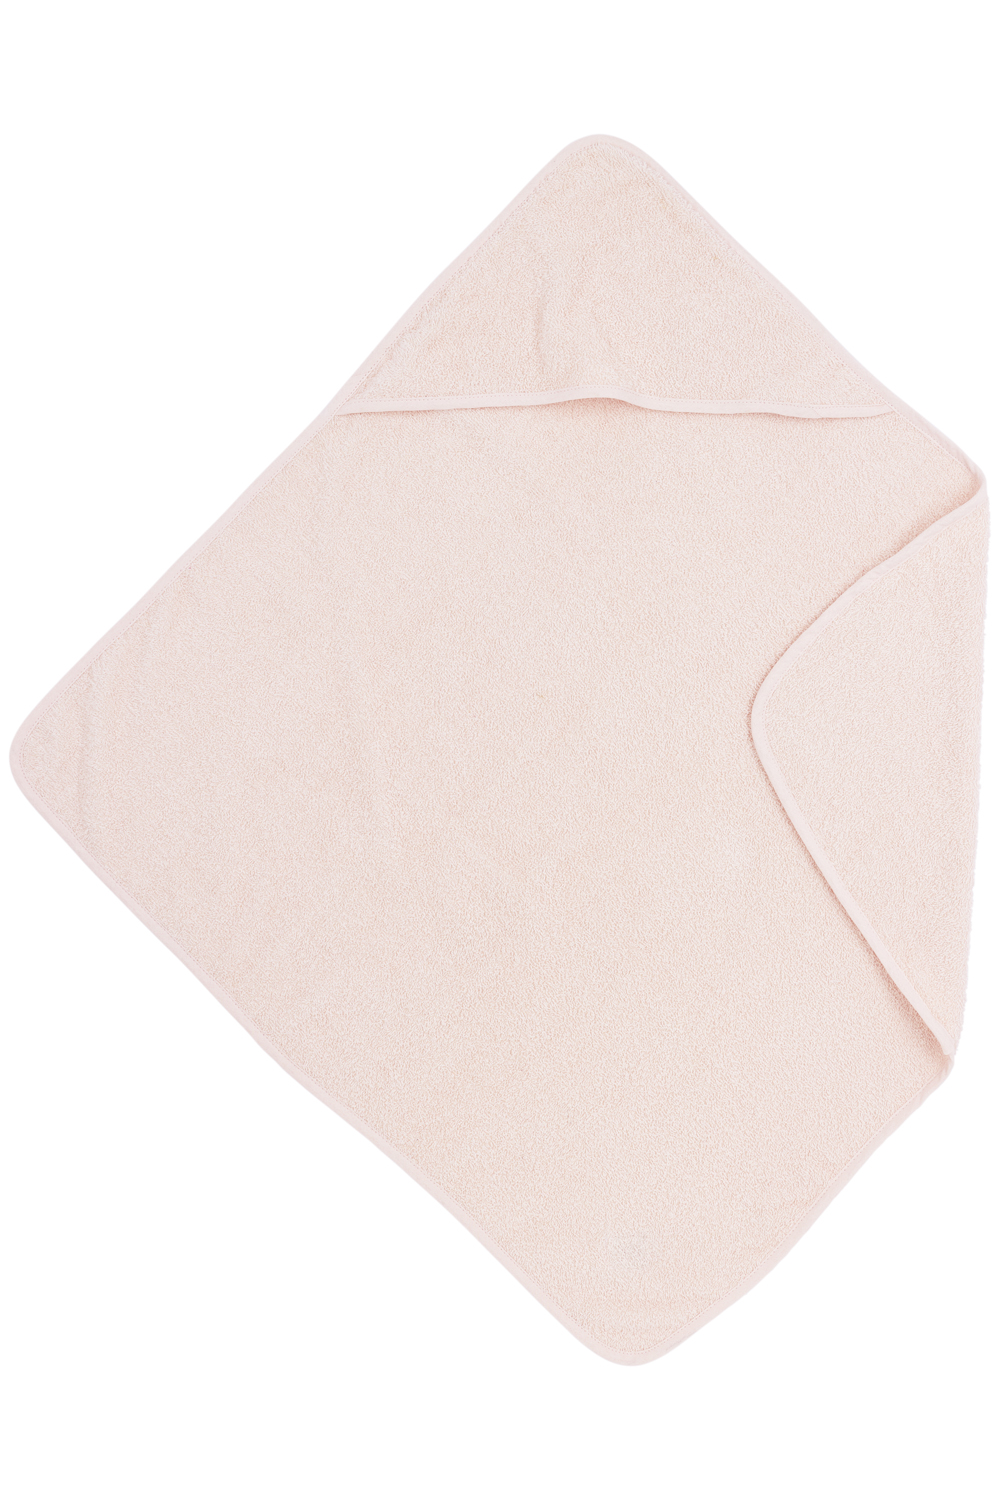 Bathcape terry Uni - soft pink - 75x75cm